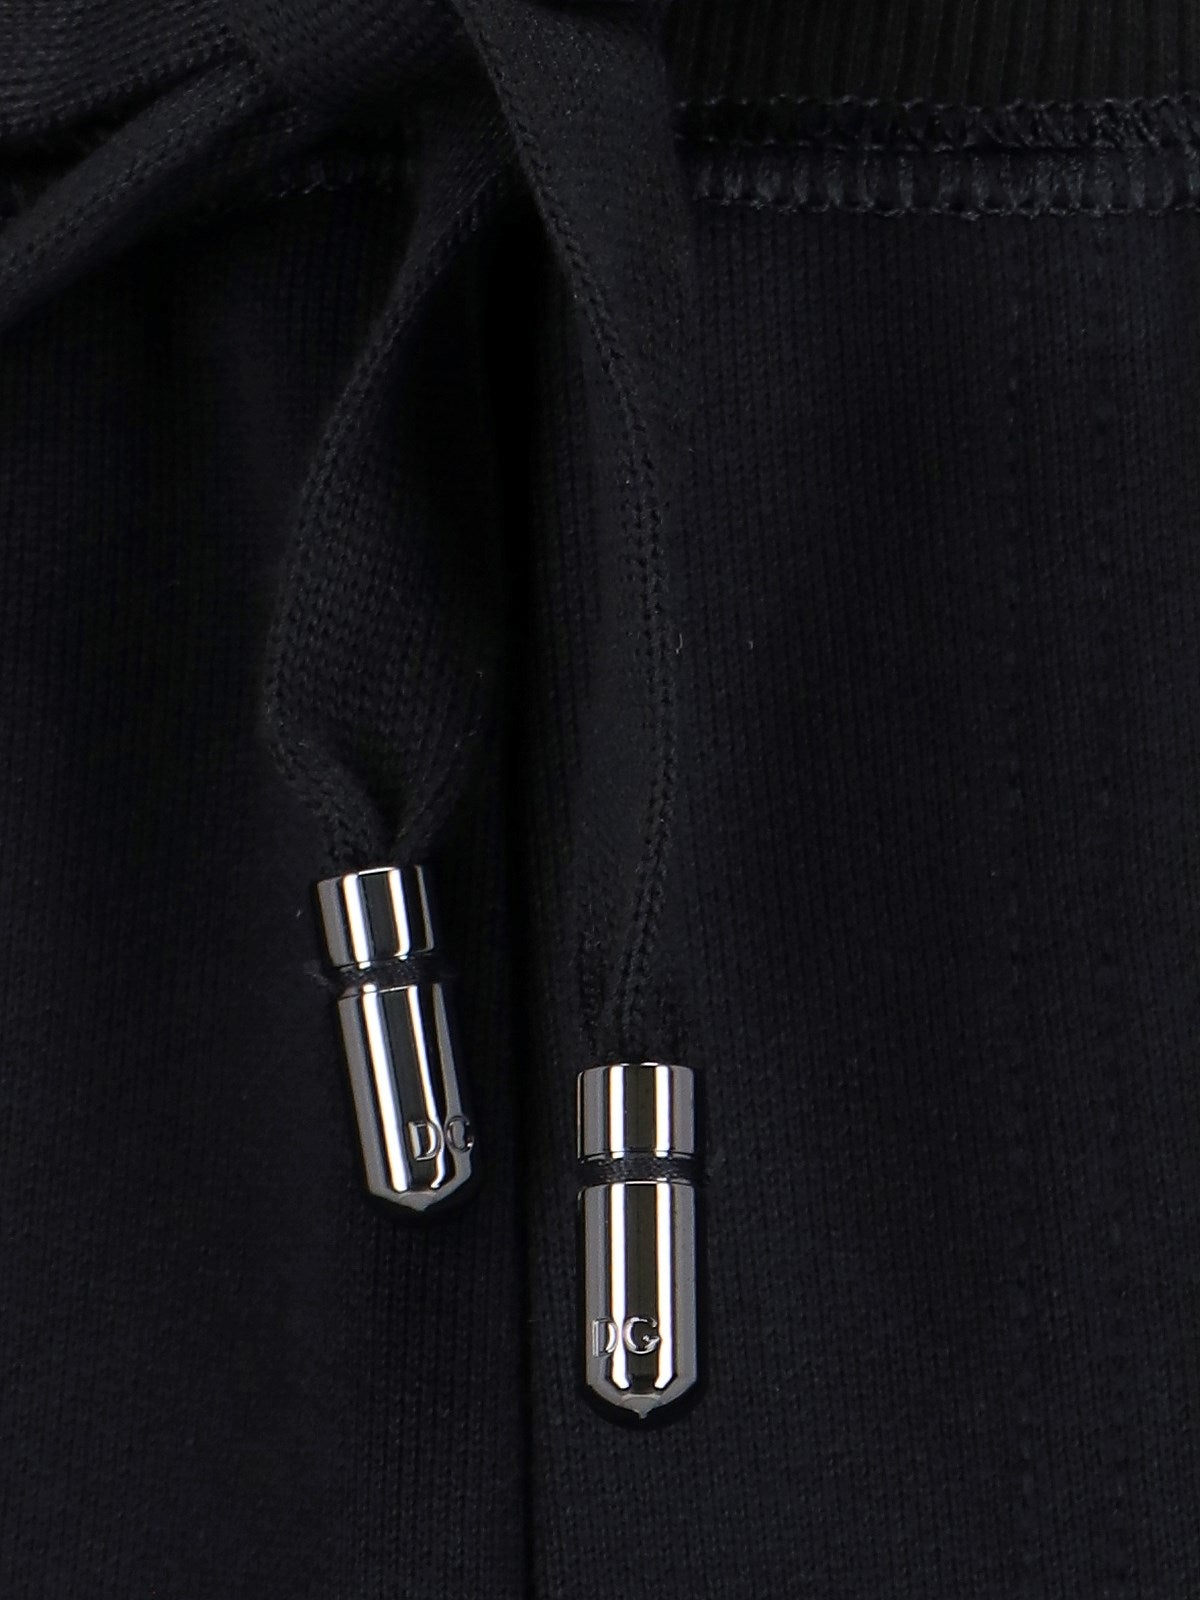 Dolce & Gabbana Pantaloncini sportivi-Short-Dolce & Gabbana-Pantaloncini sportivi Dolce & Gabbana, in cotone nero, vita elastica, coulisse, due tasche zip laterali, una tasca zip retro, placca logo metallico argentato retro, orlo dritto.-Dresso